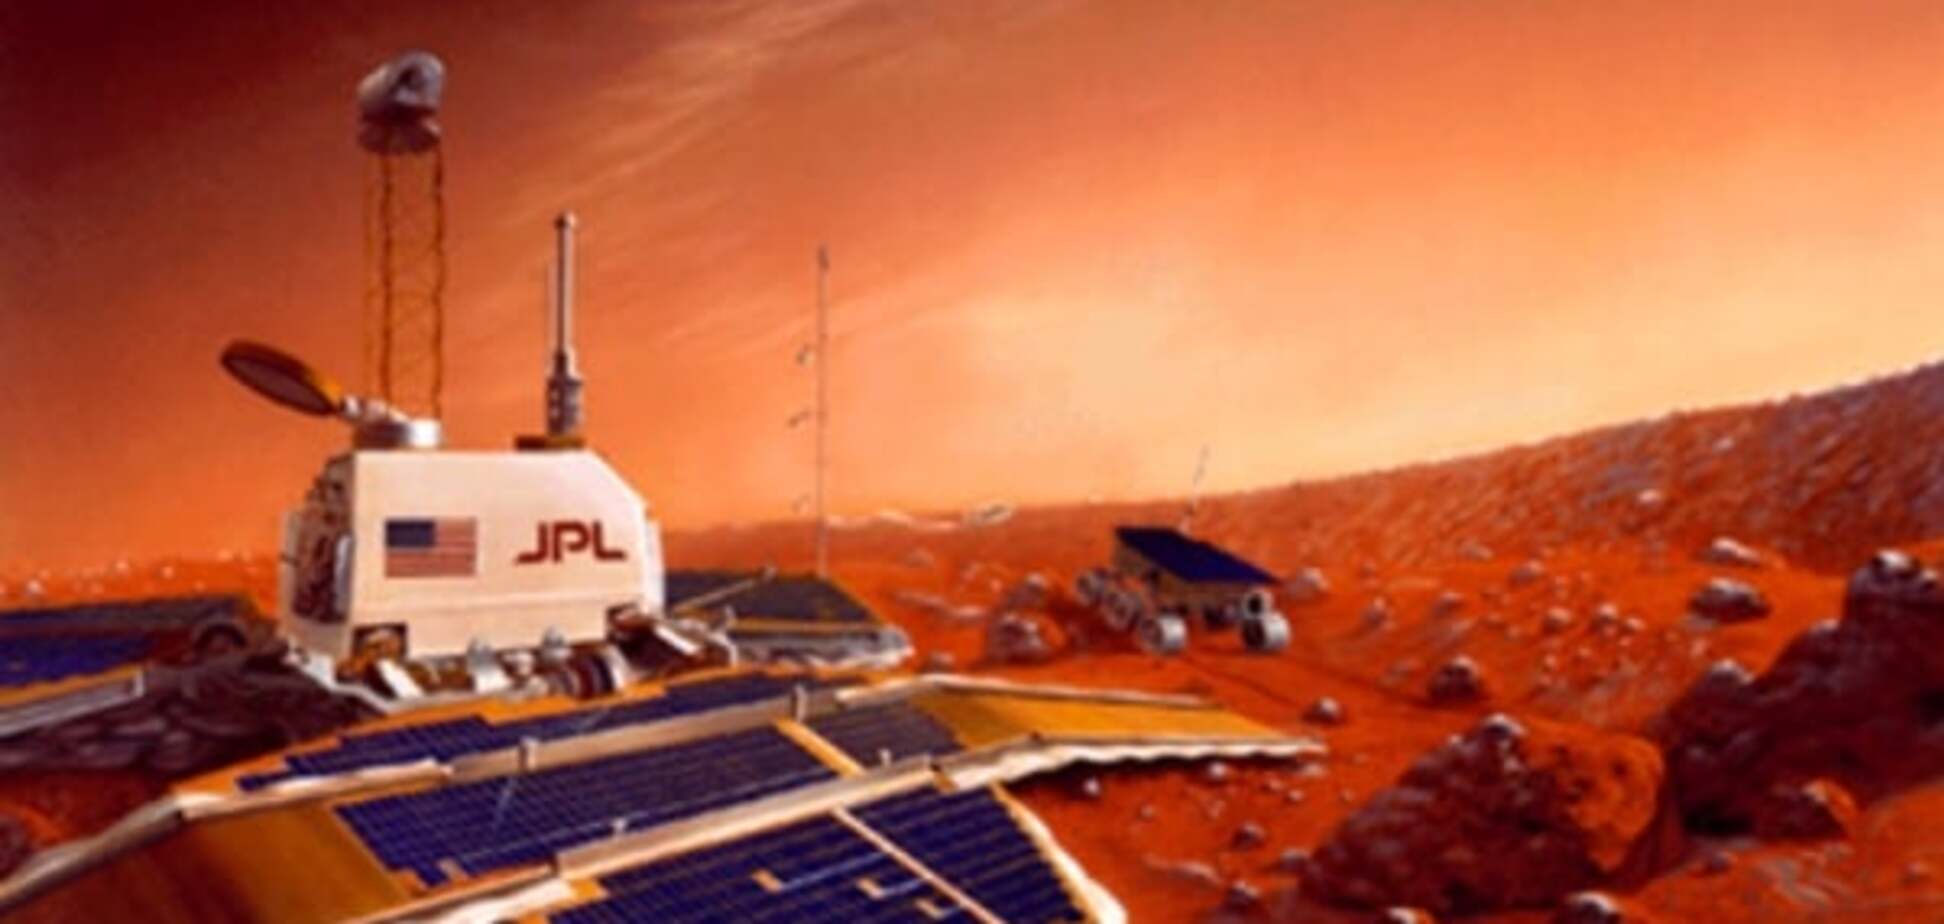 Побывать на Красной планете: NASA показало интерактивное изображение Марса